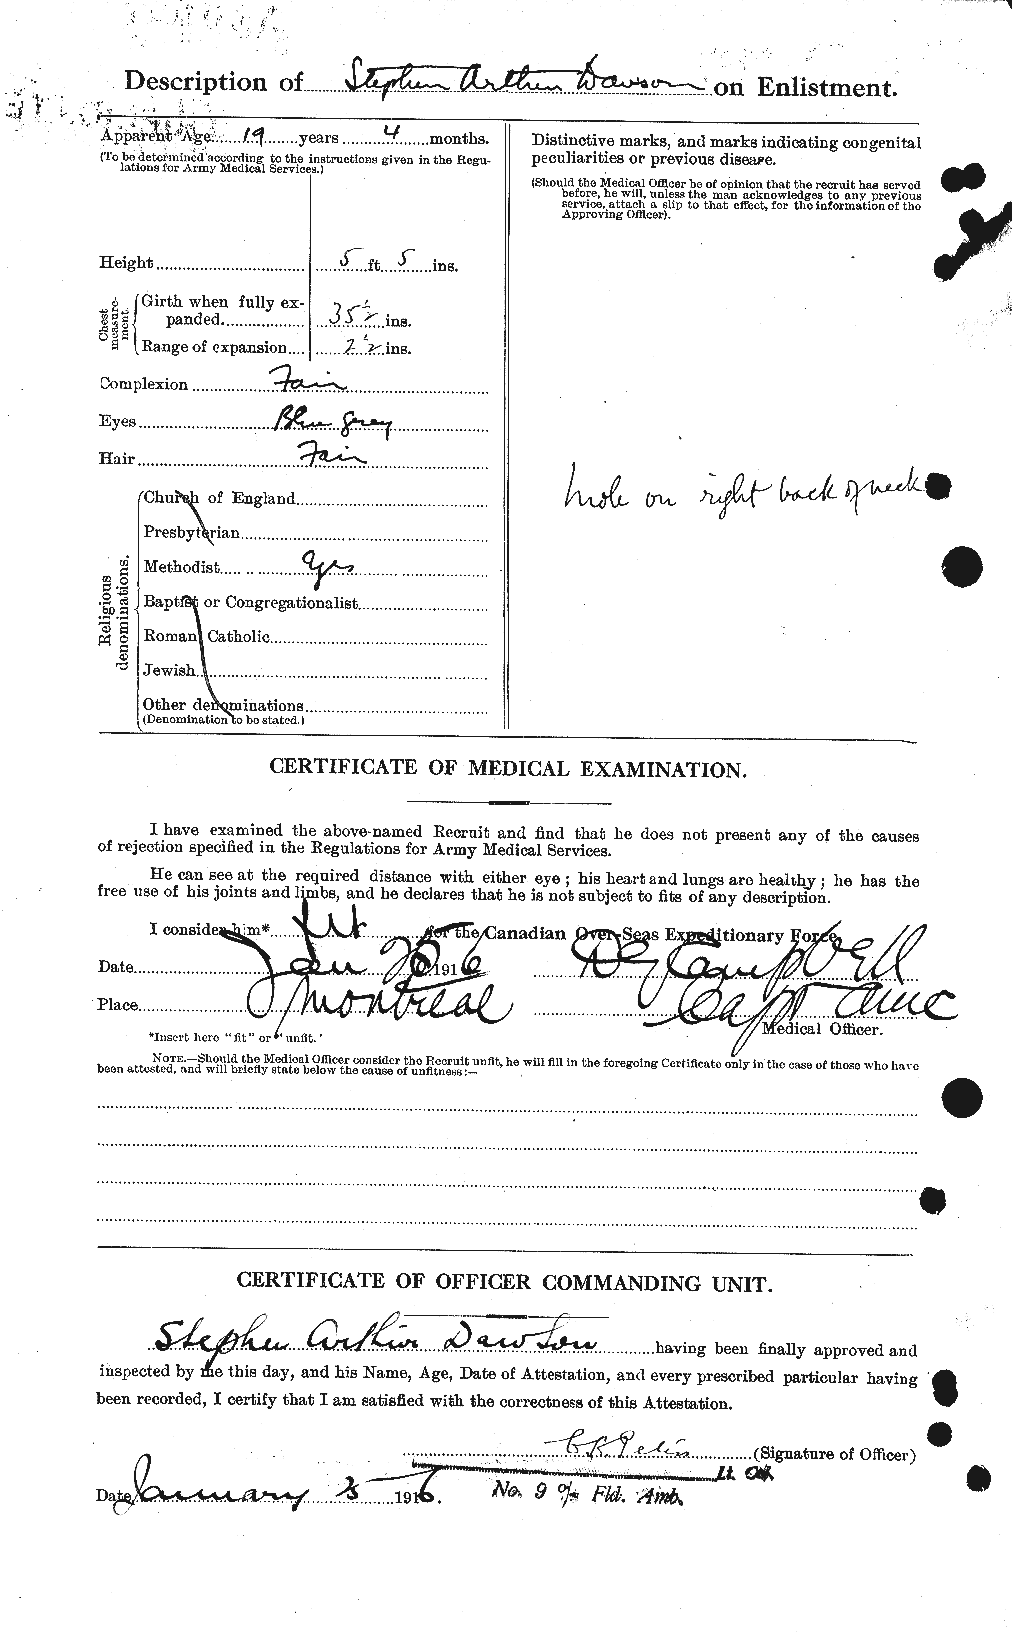 Dossiers du Personnel de la Première Guerre mondiale - CEC 282821b